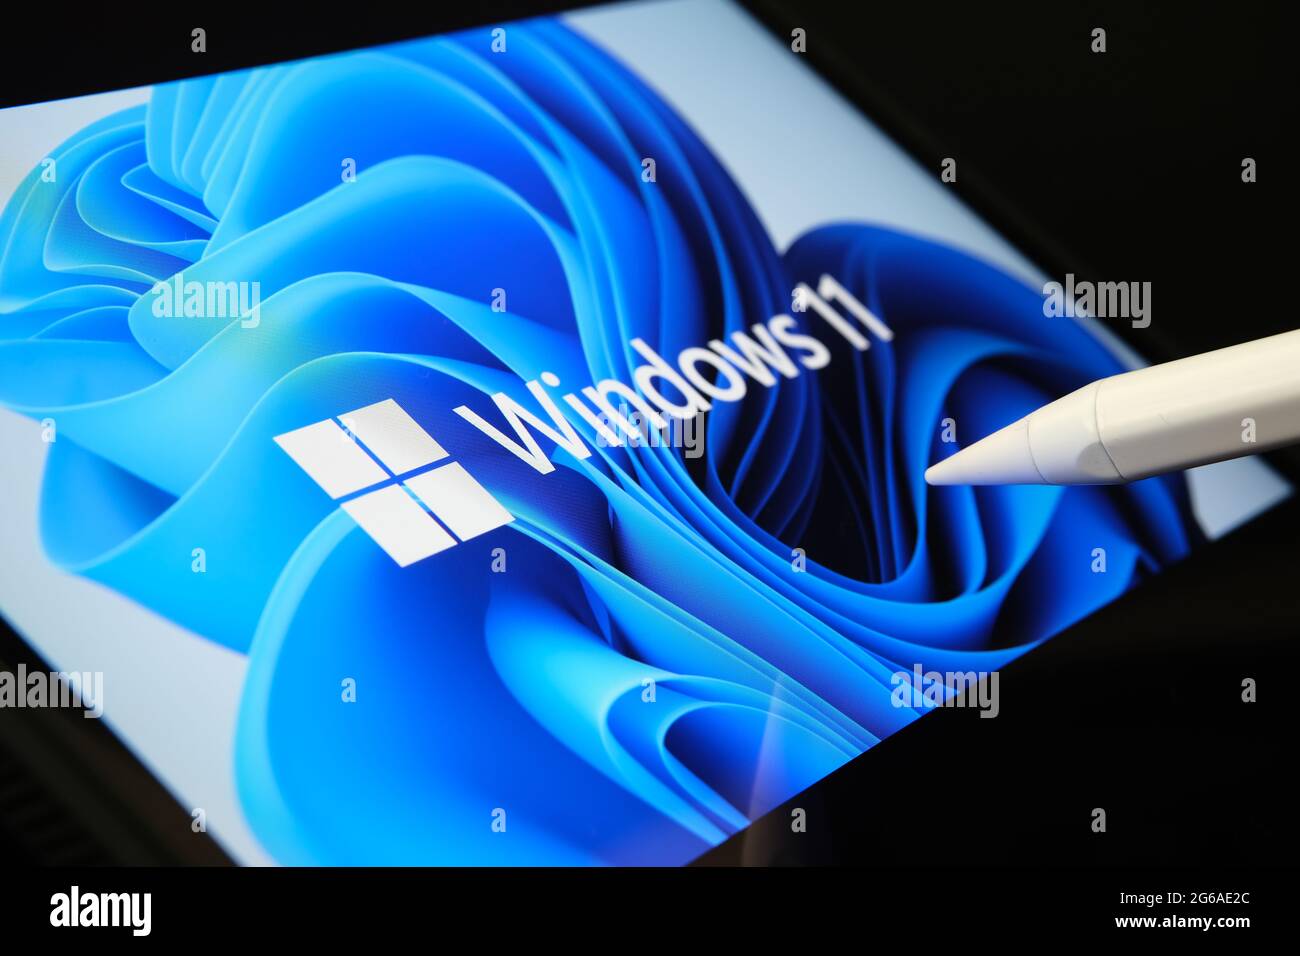 El logotipo de Windows 11 aparece en la pantalla de la tableta y el usuario lo señala con el lápiz óptico. Stafford, Reino Unido, 1 de julio de 2021 Foto de stock